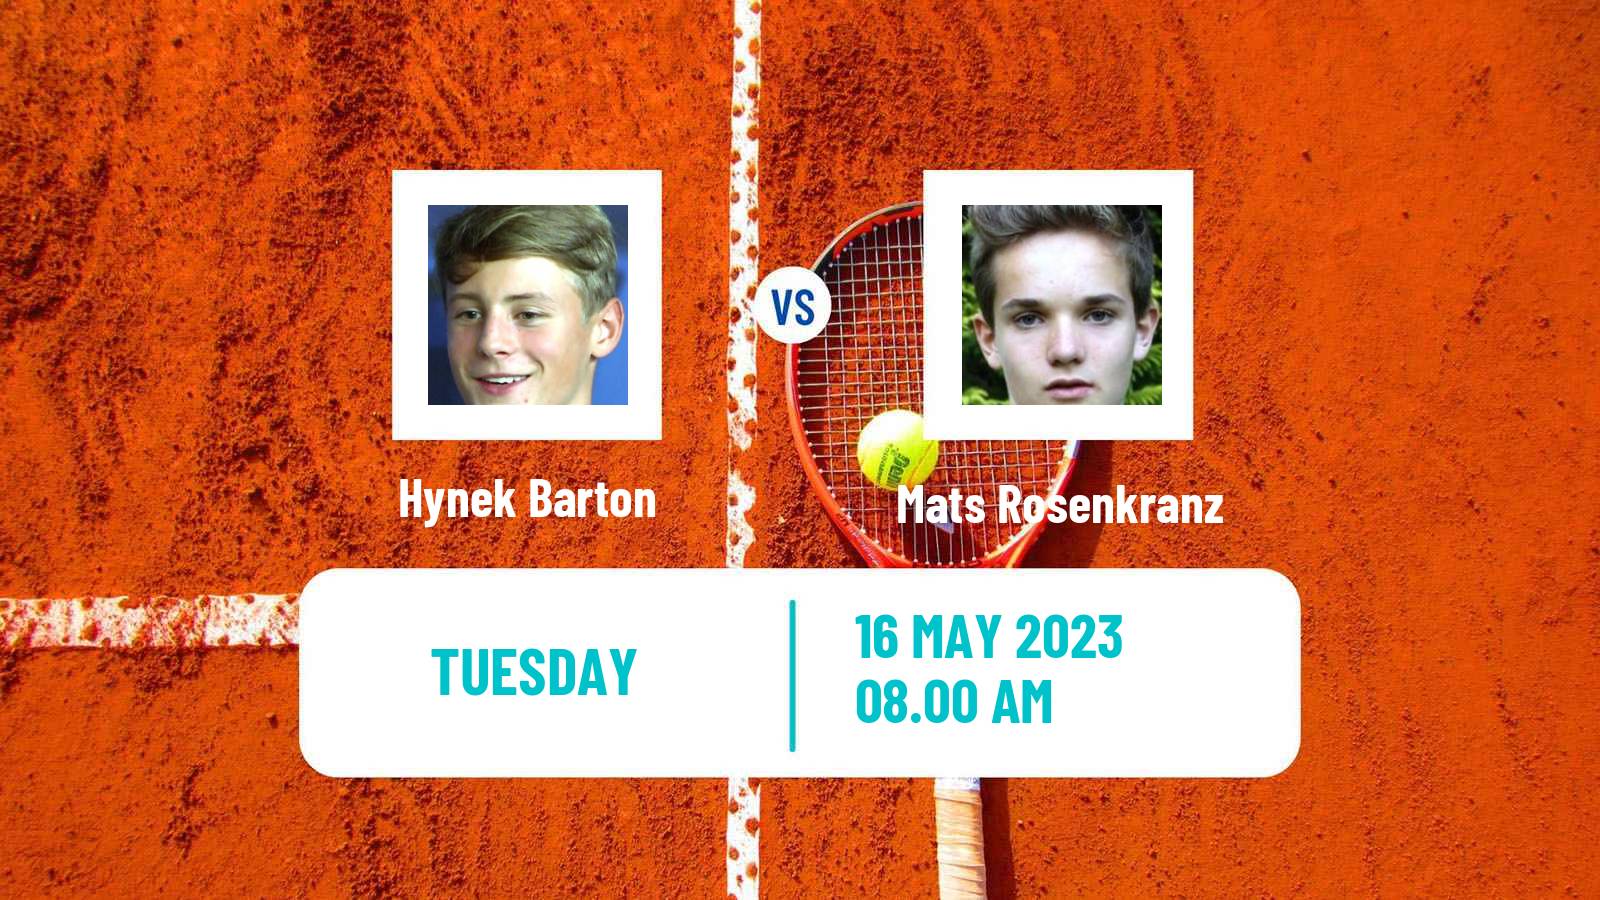 Tennis ITF M25 Prague Men Hynek Barton - Mats Rosenkranz